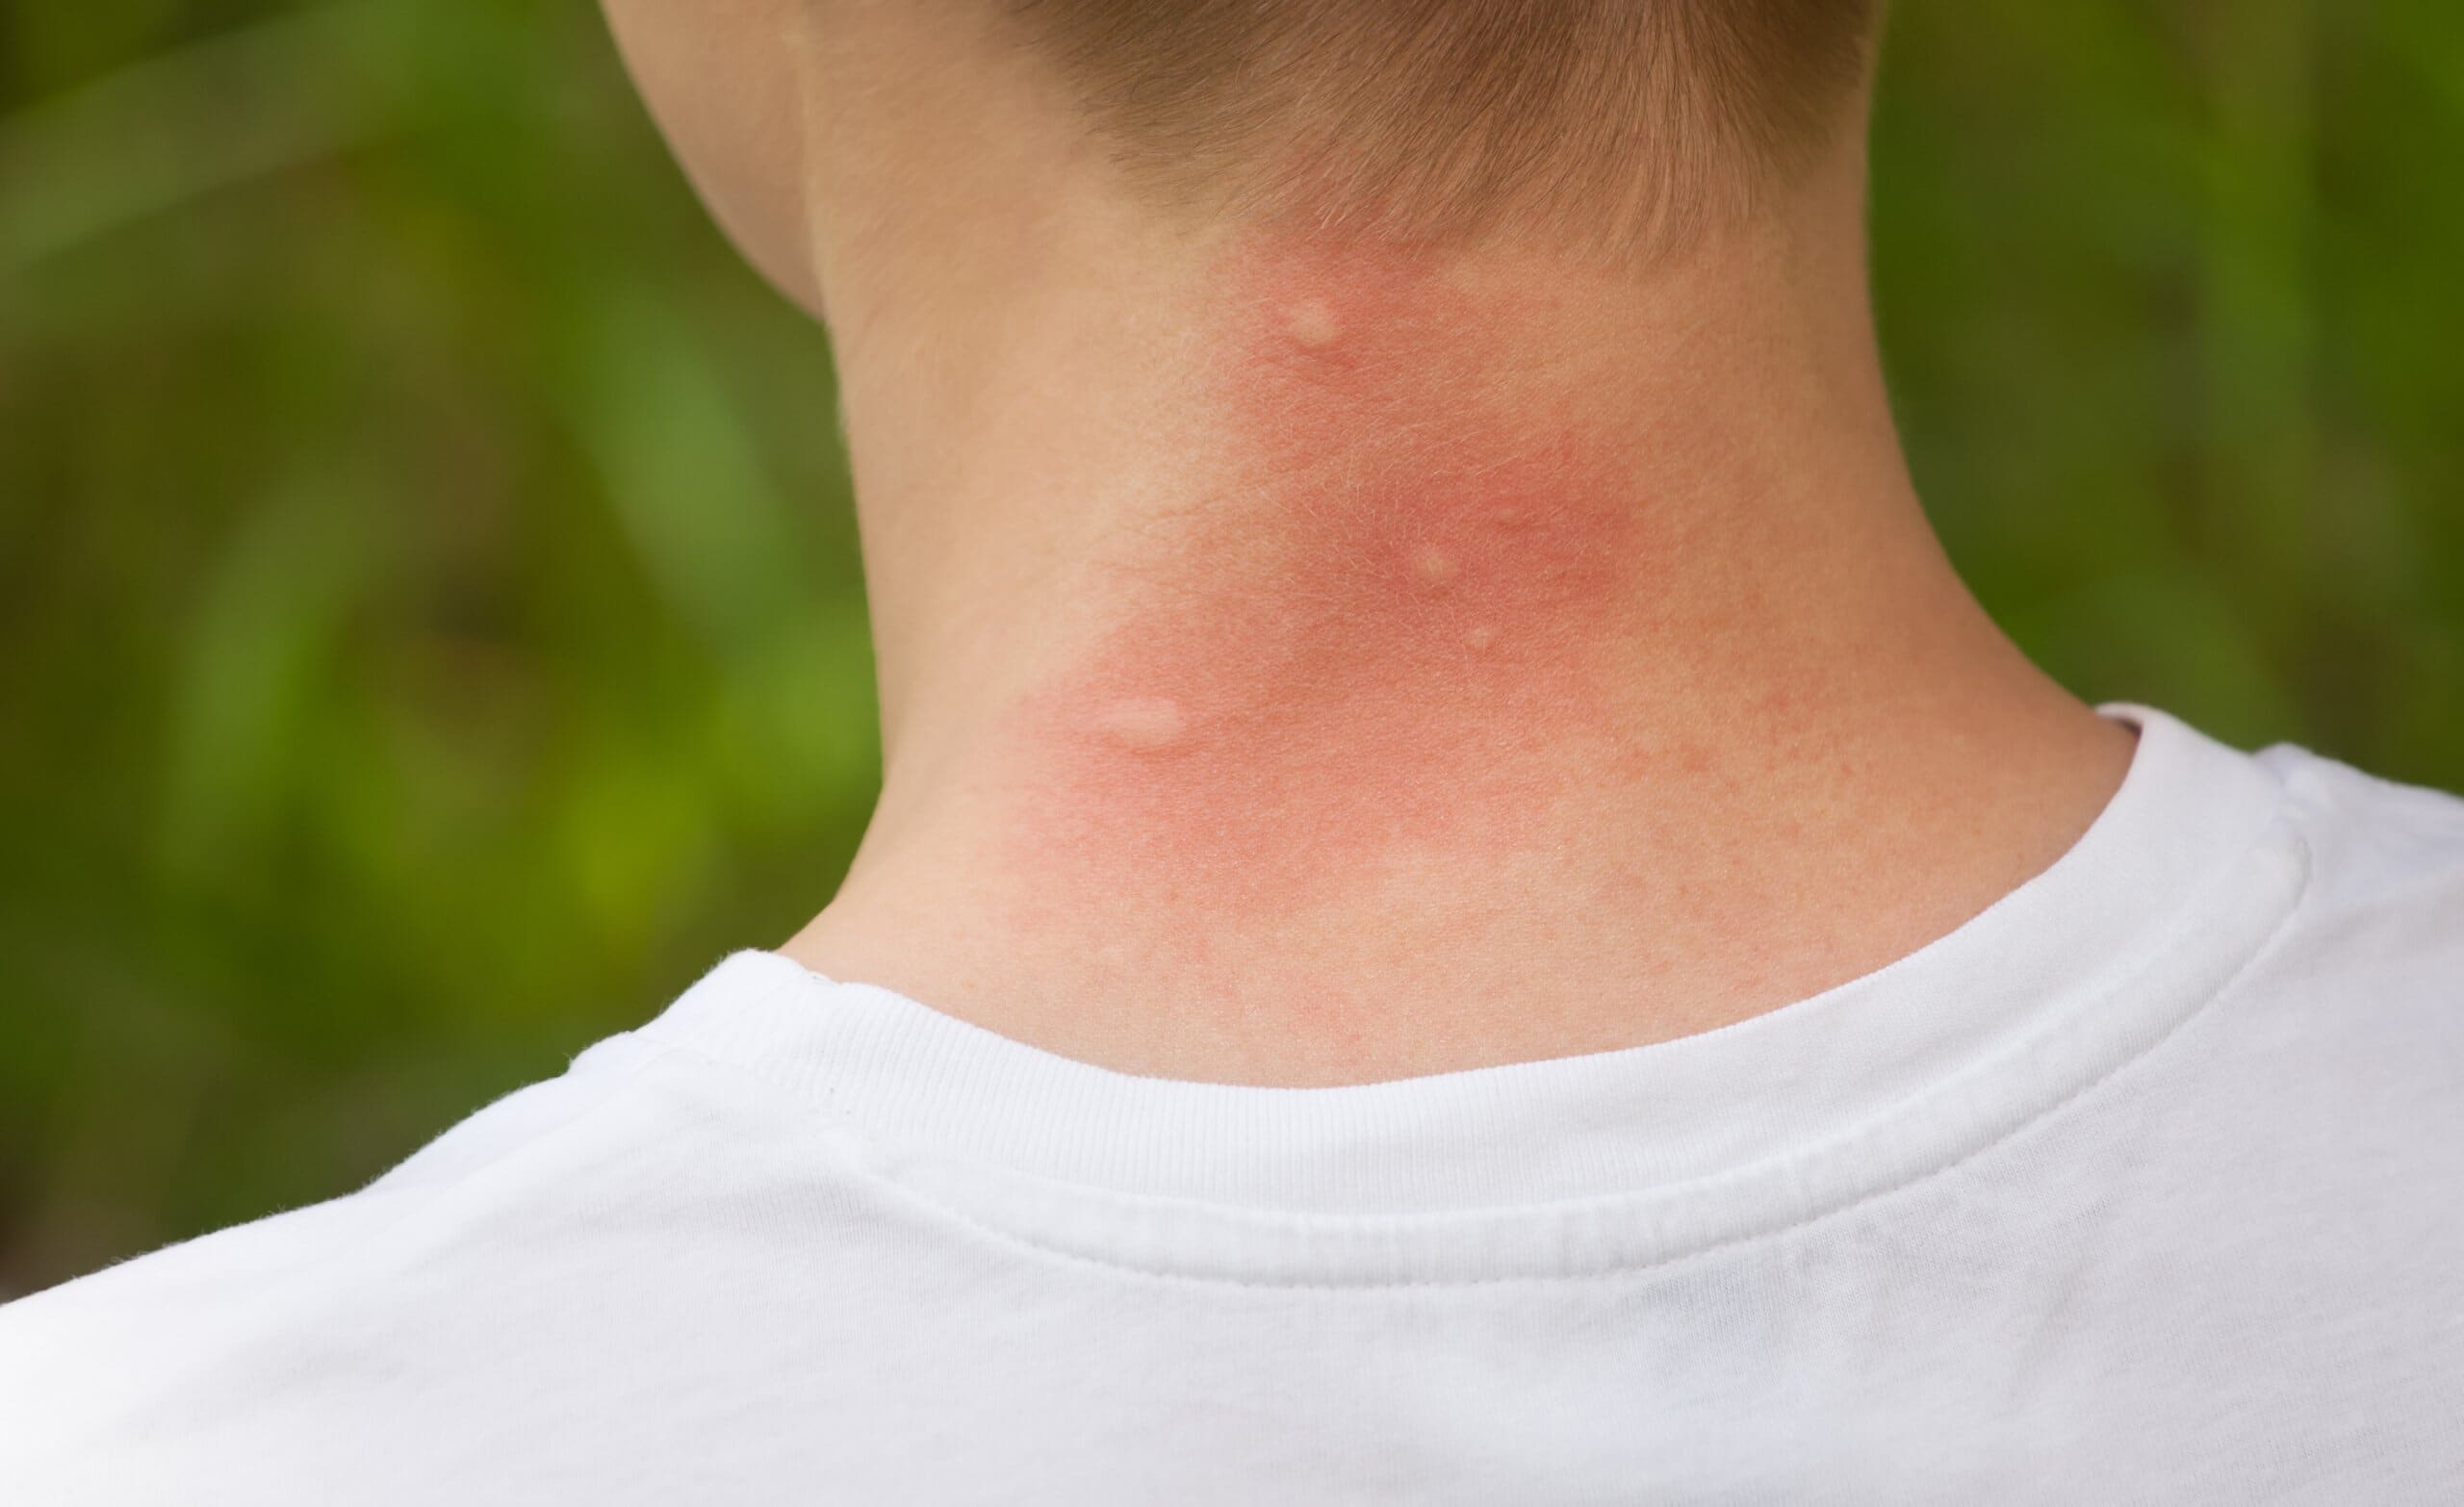 Mosquito bites on the neck.